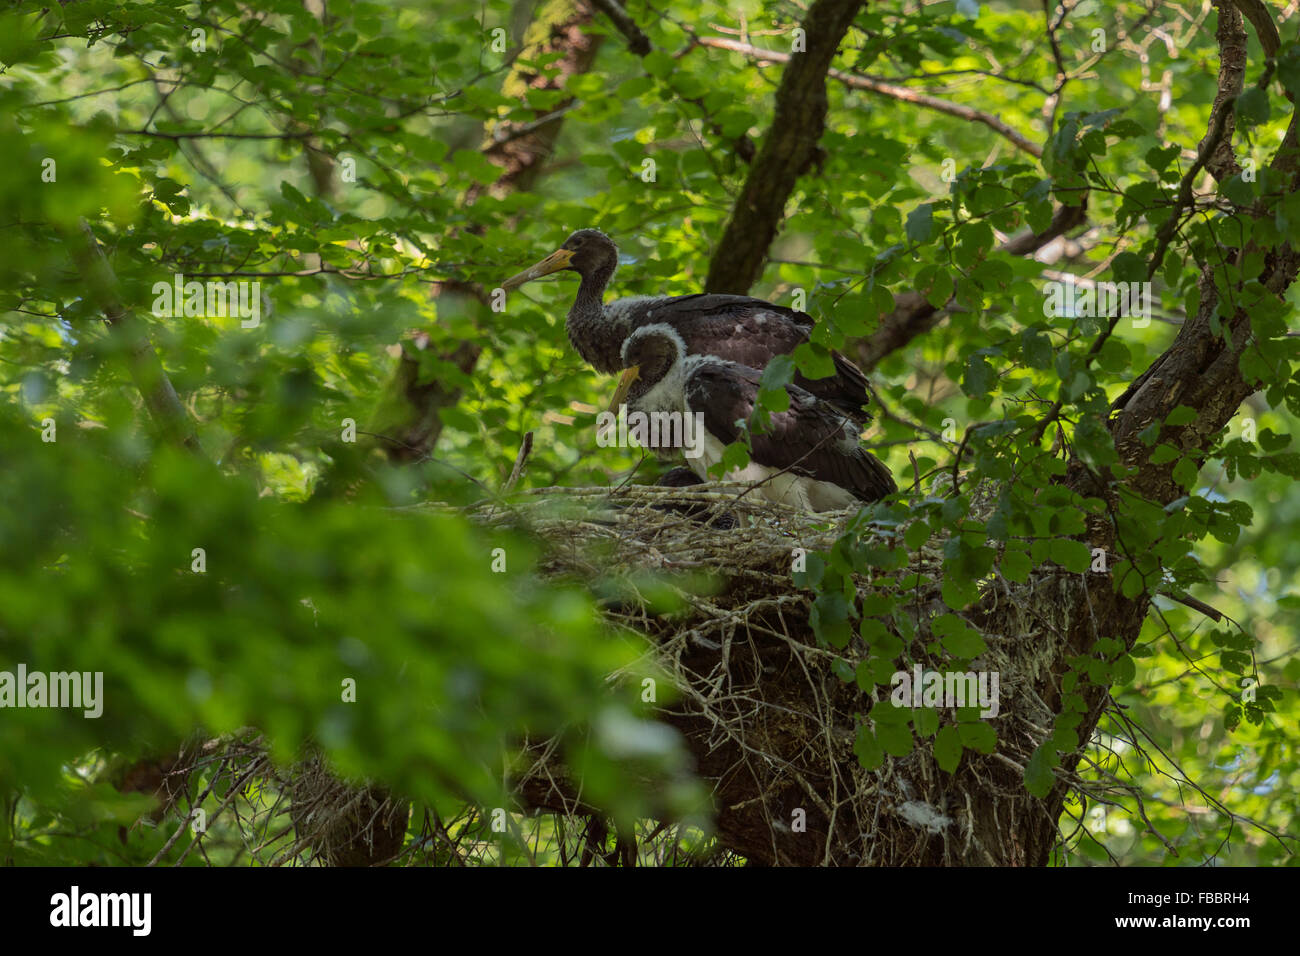 L'Envol de la cigogne noire (Ciconia nigra ) se trouve dans leur nid d'aigle caché /, dans un vieil arbre, dans l'attente de la nourriture. Banque D'Images